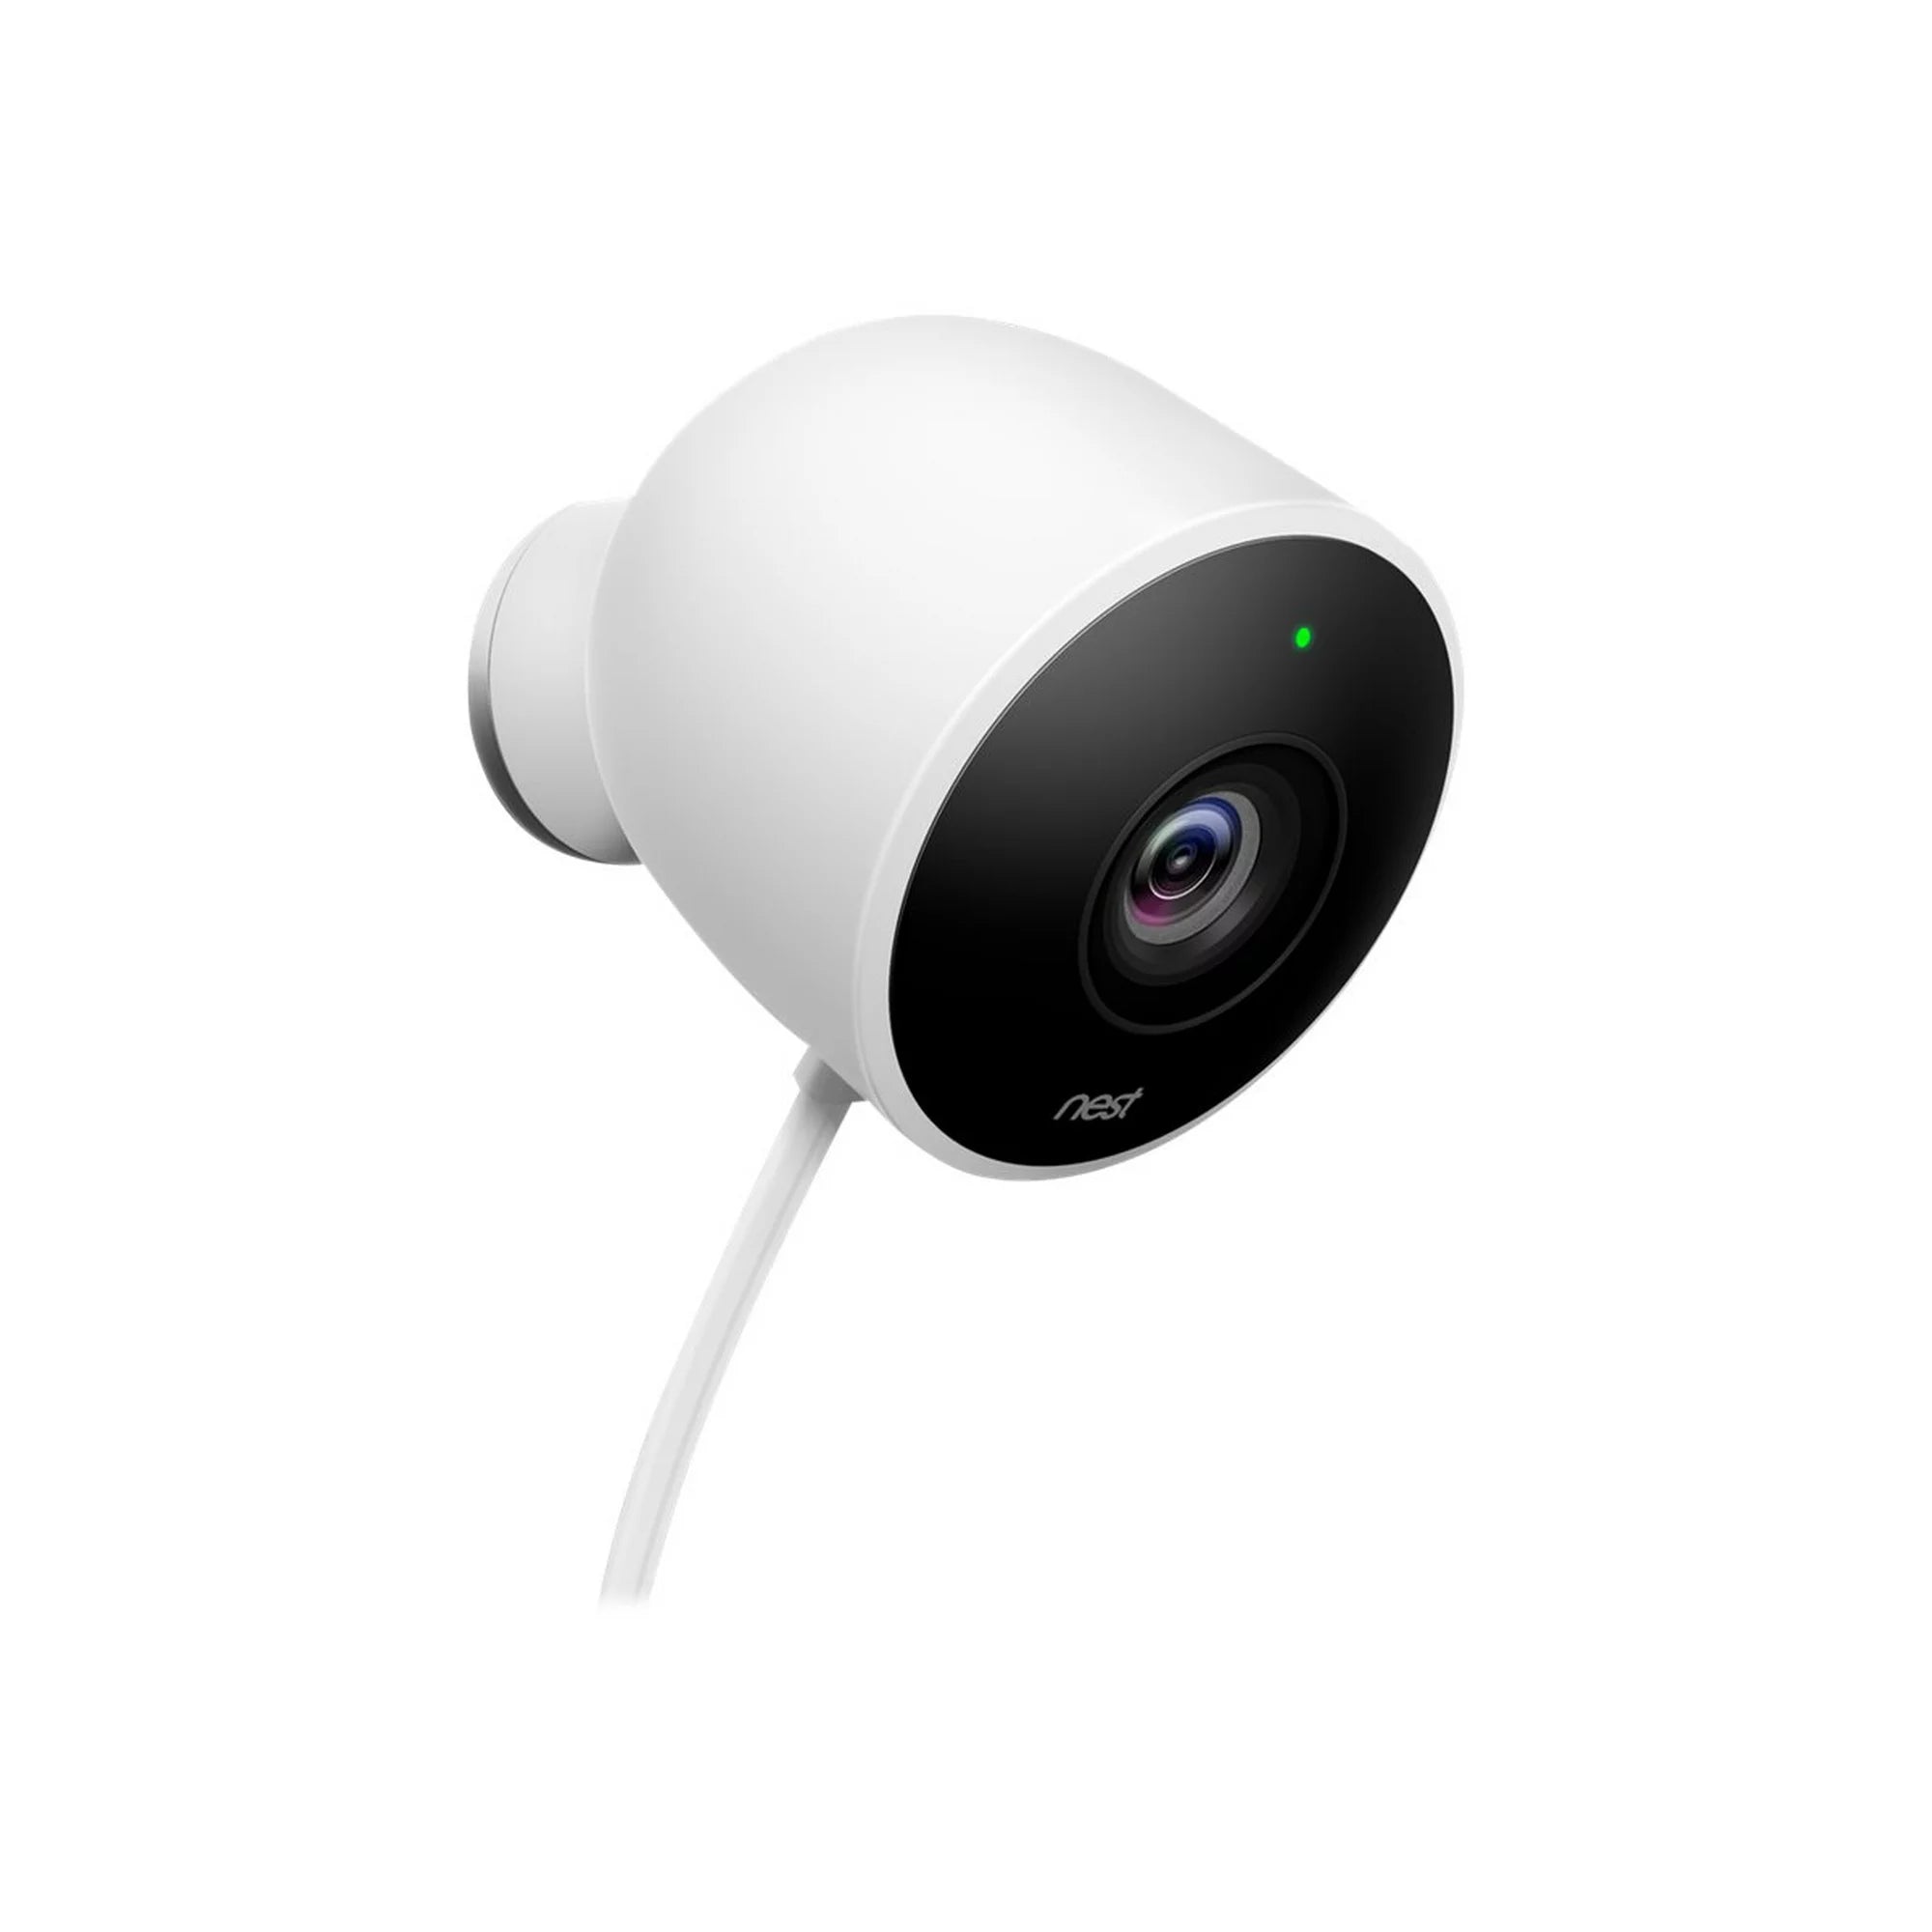 Google Nest Cam Outdoor 3 Megapixel Outdoor HD Network Camera